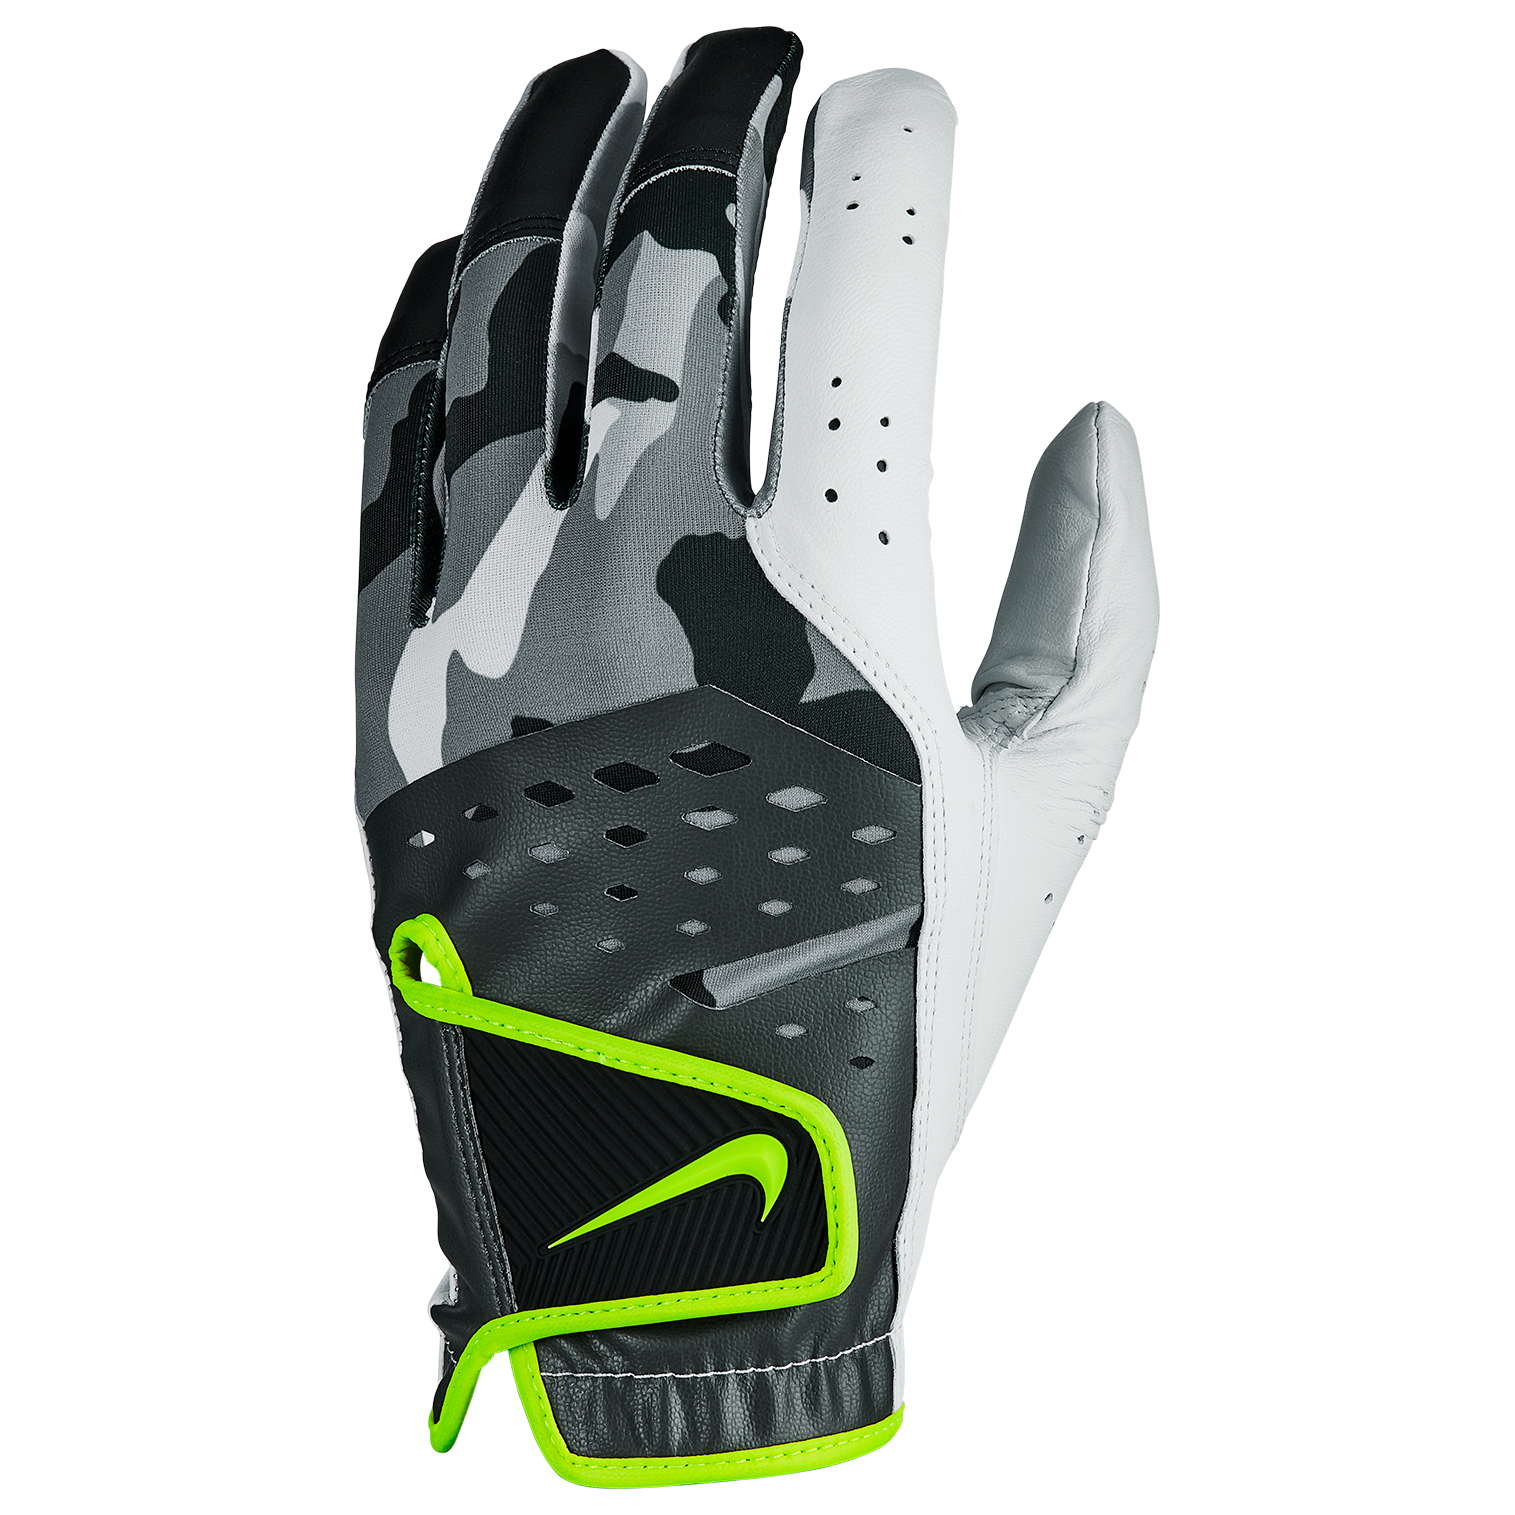 Norm smeren Relativiteitstheorie Nike Tech Extreme VII Golf Glove | PGA TOUR Superstore